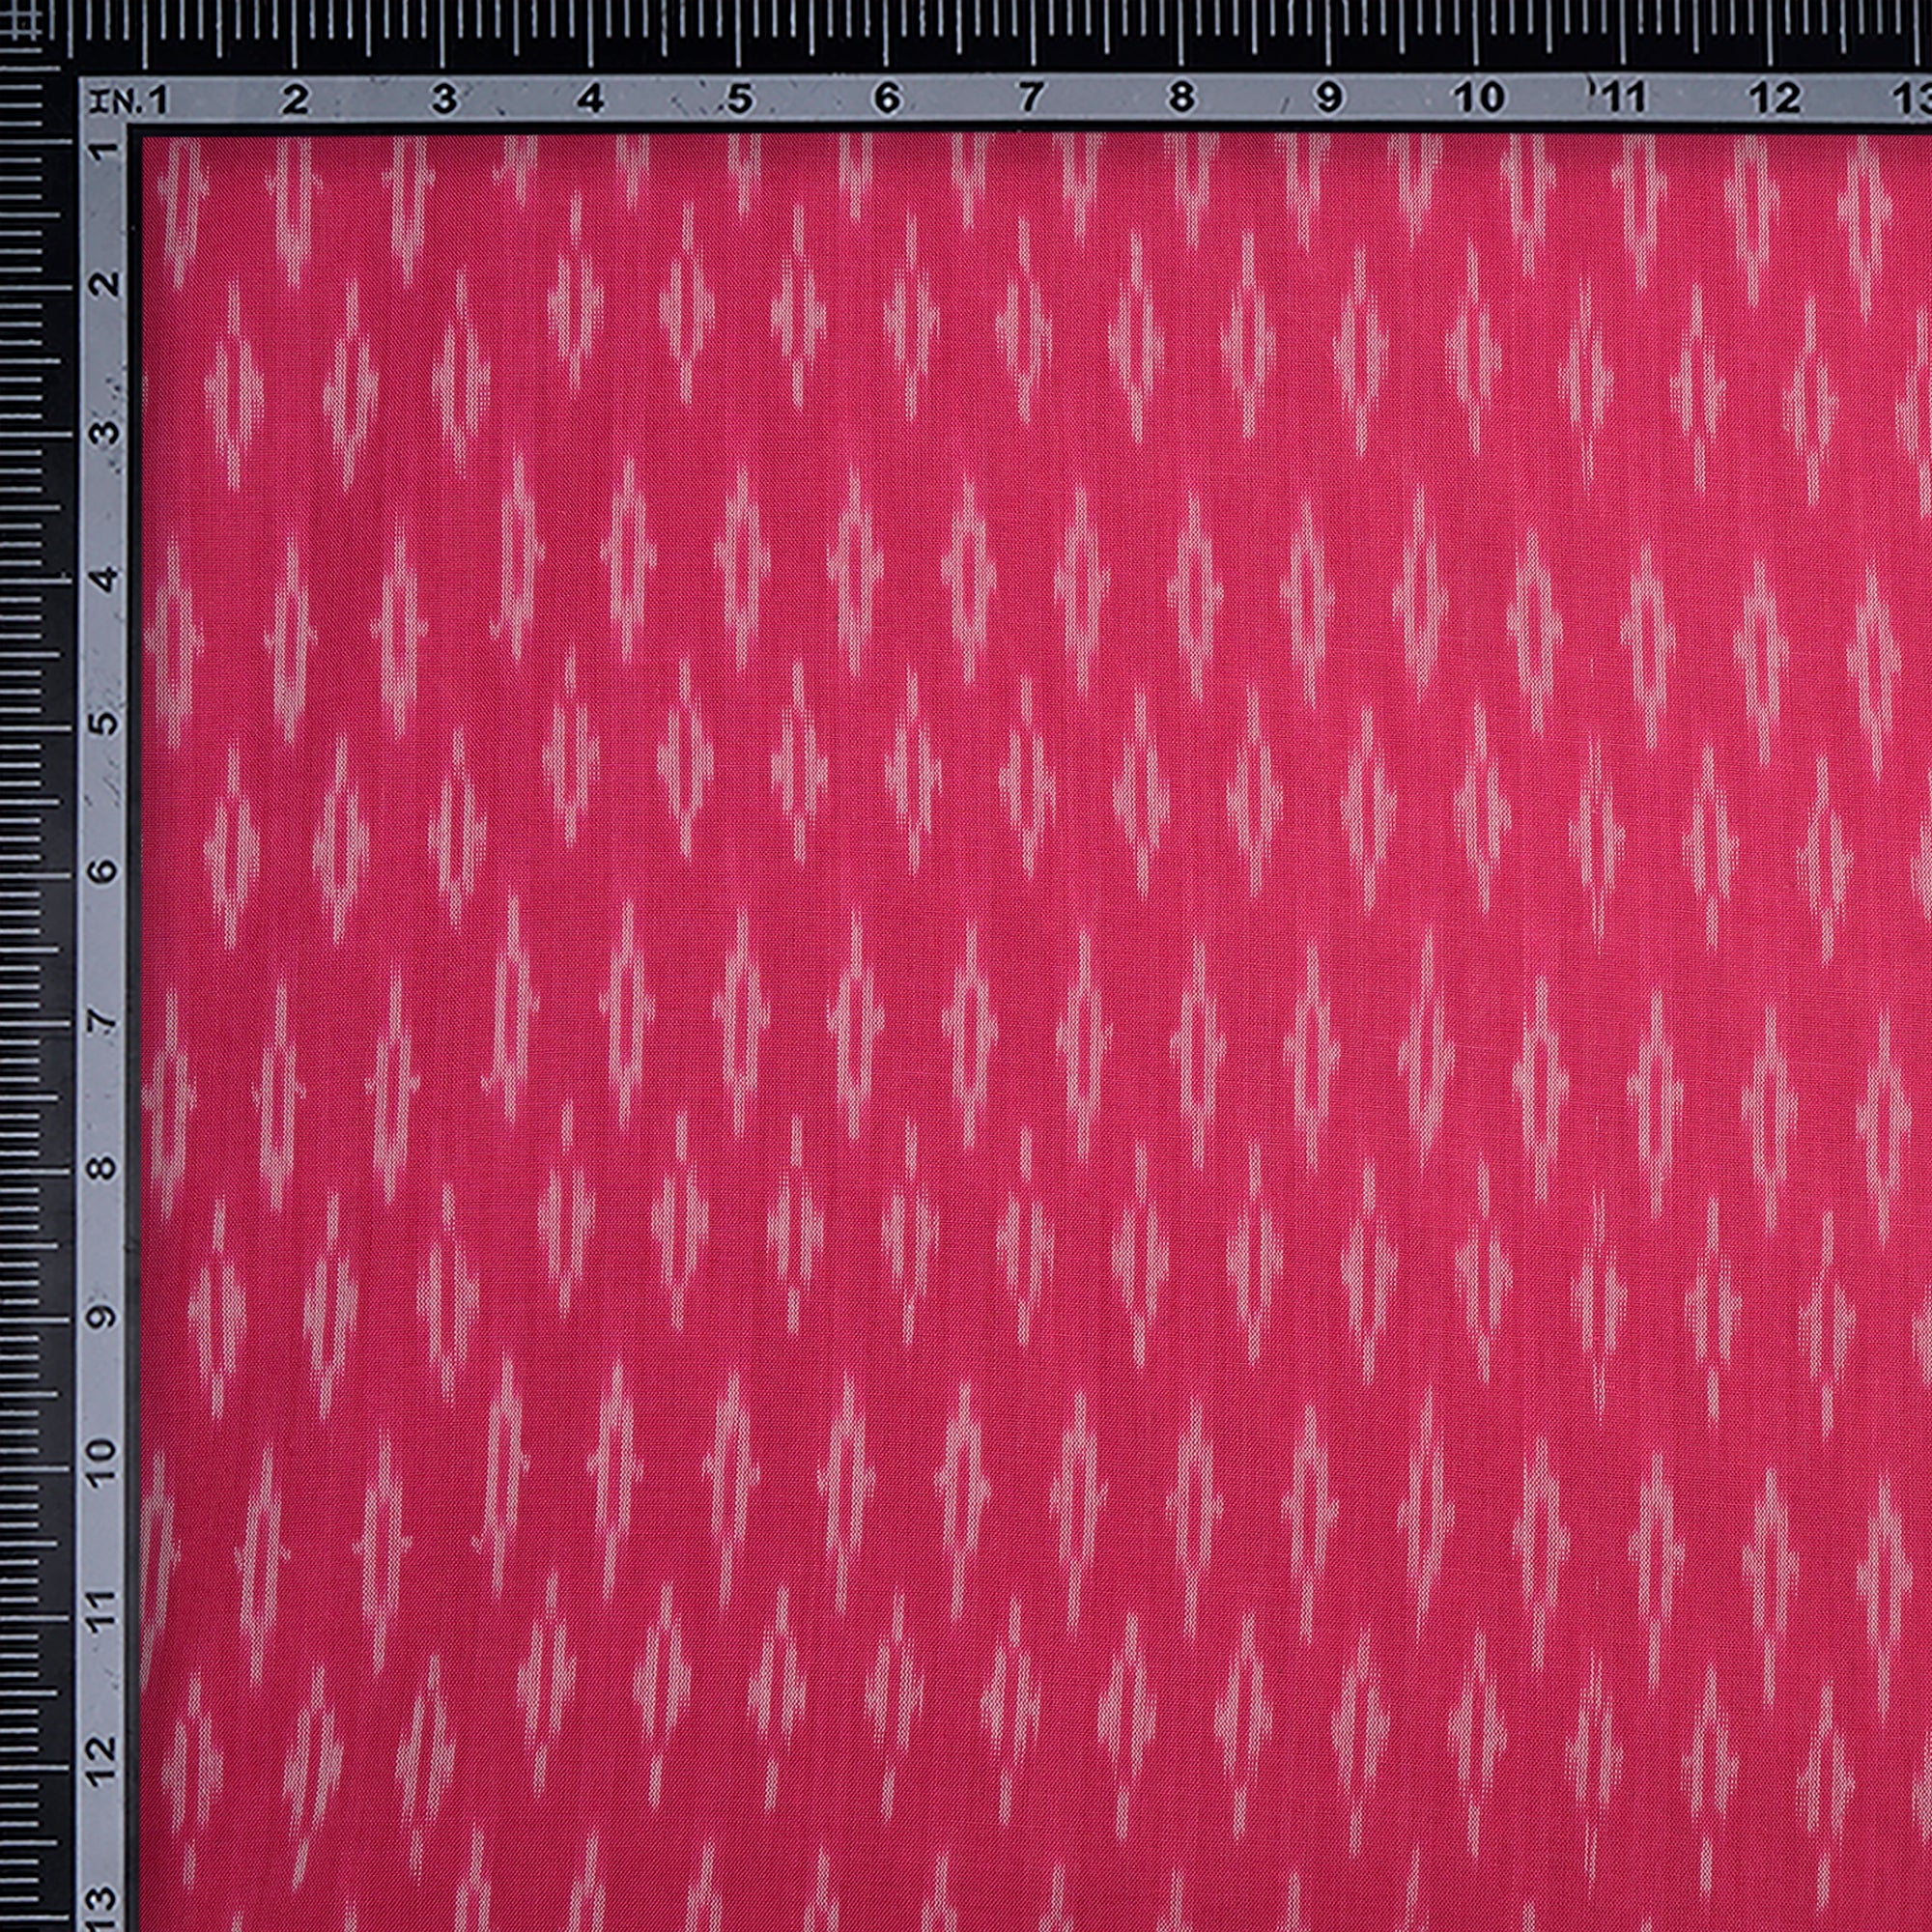 Rani Pink 2/120 Mercerized Washed Woven Ikat Cotton Fabric